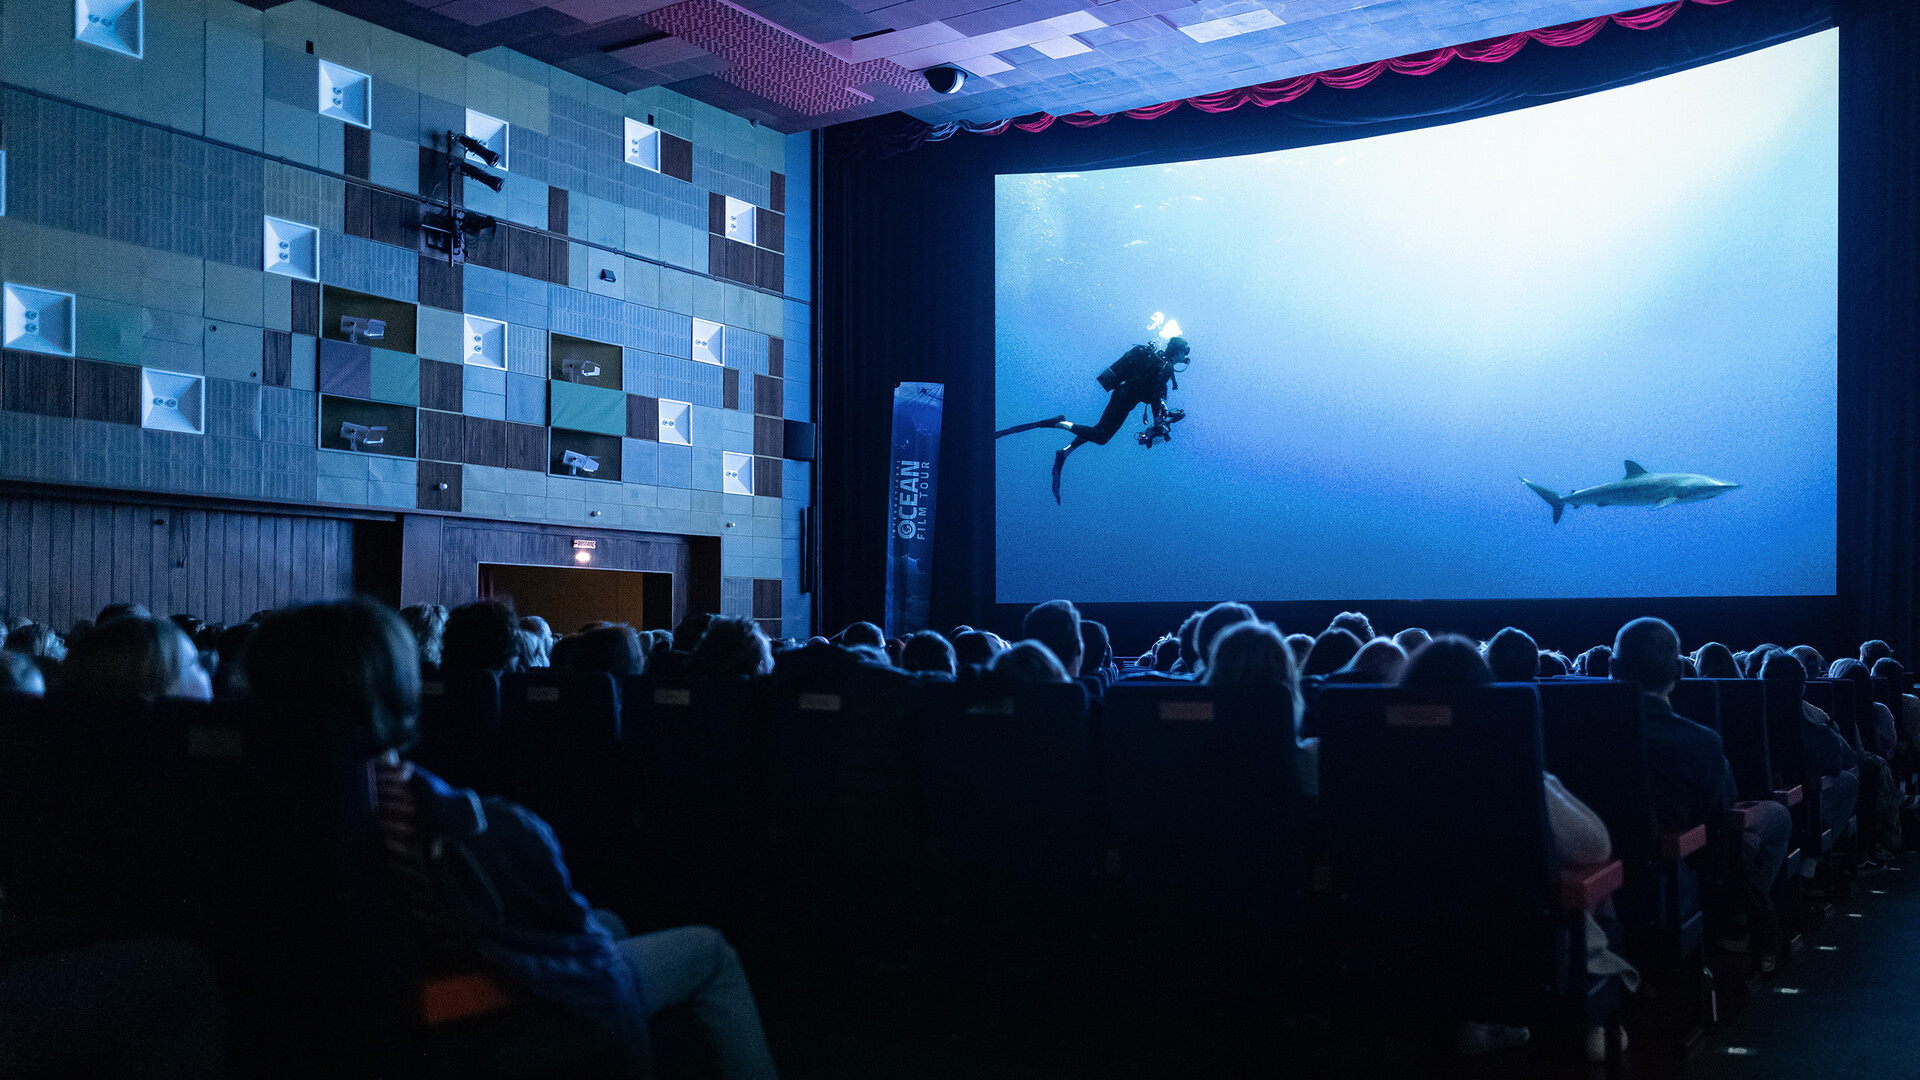 Saal mit Publikum und einer großen Leinwand, auf der ein Taucher und ein Hai zu sehen sind